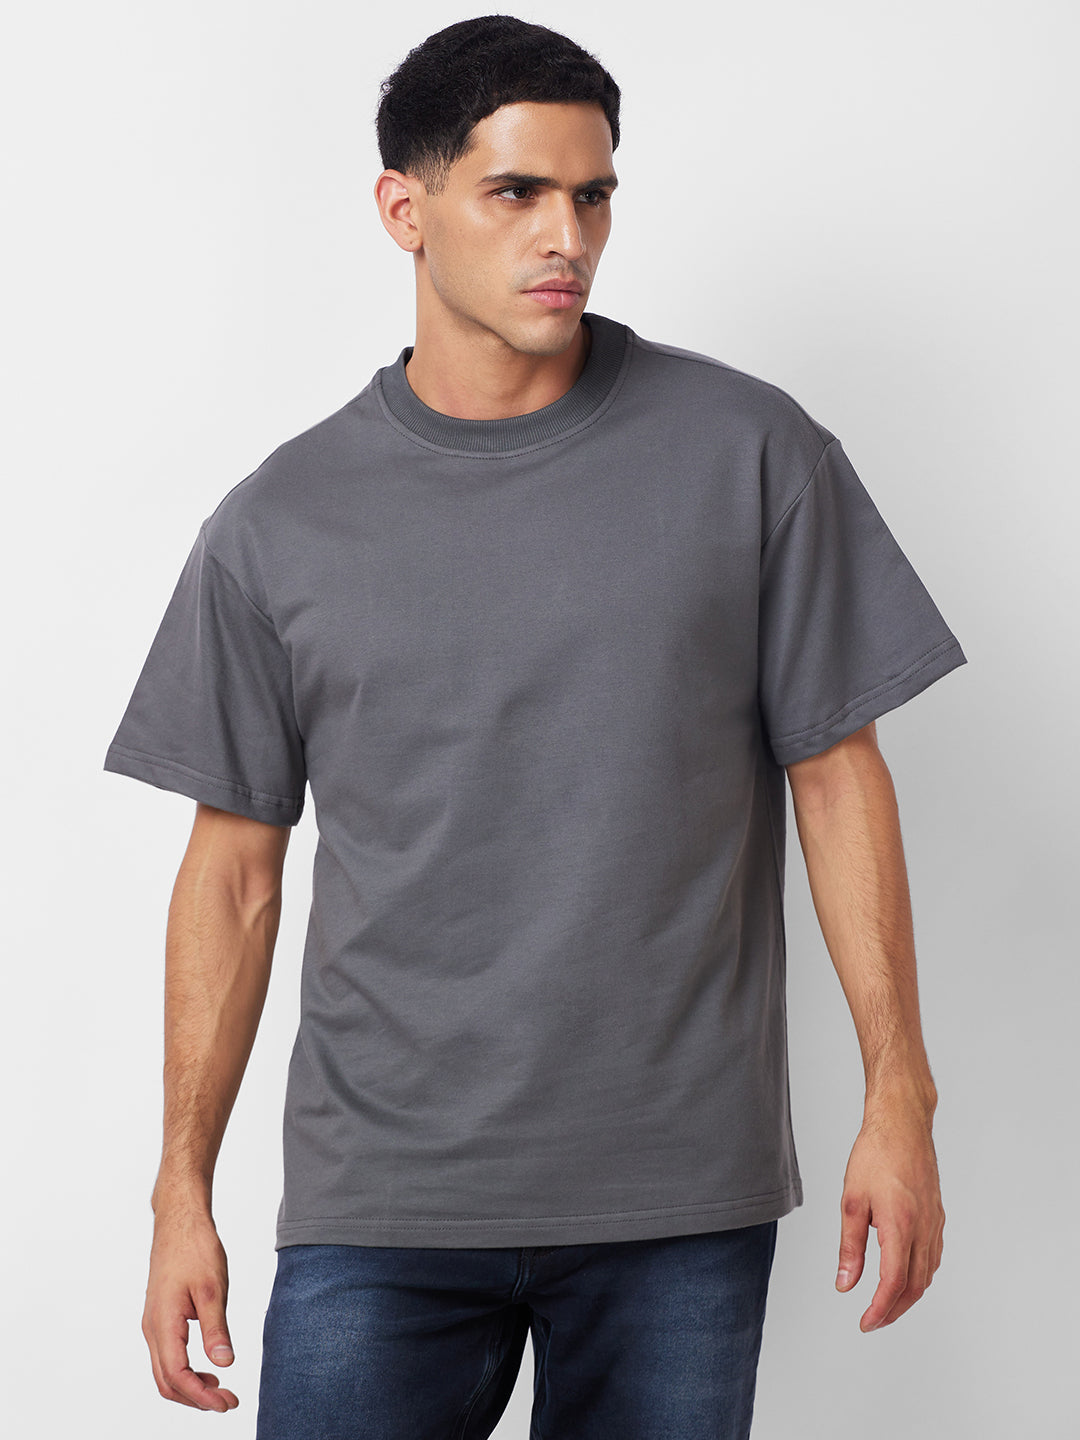 Grey Oversized T-Shirt